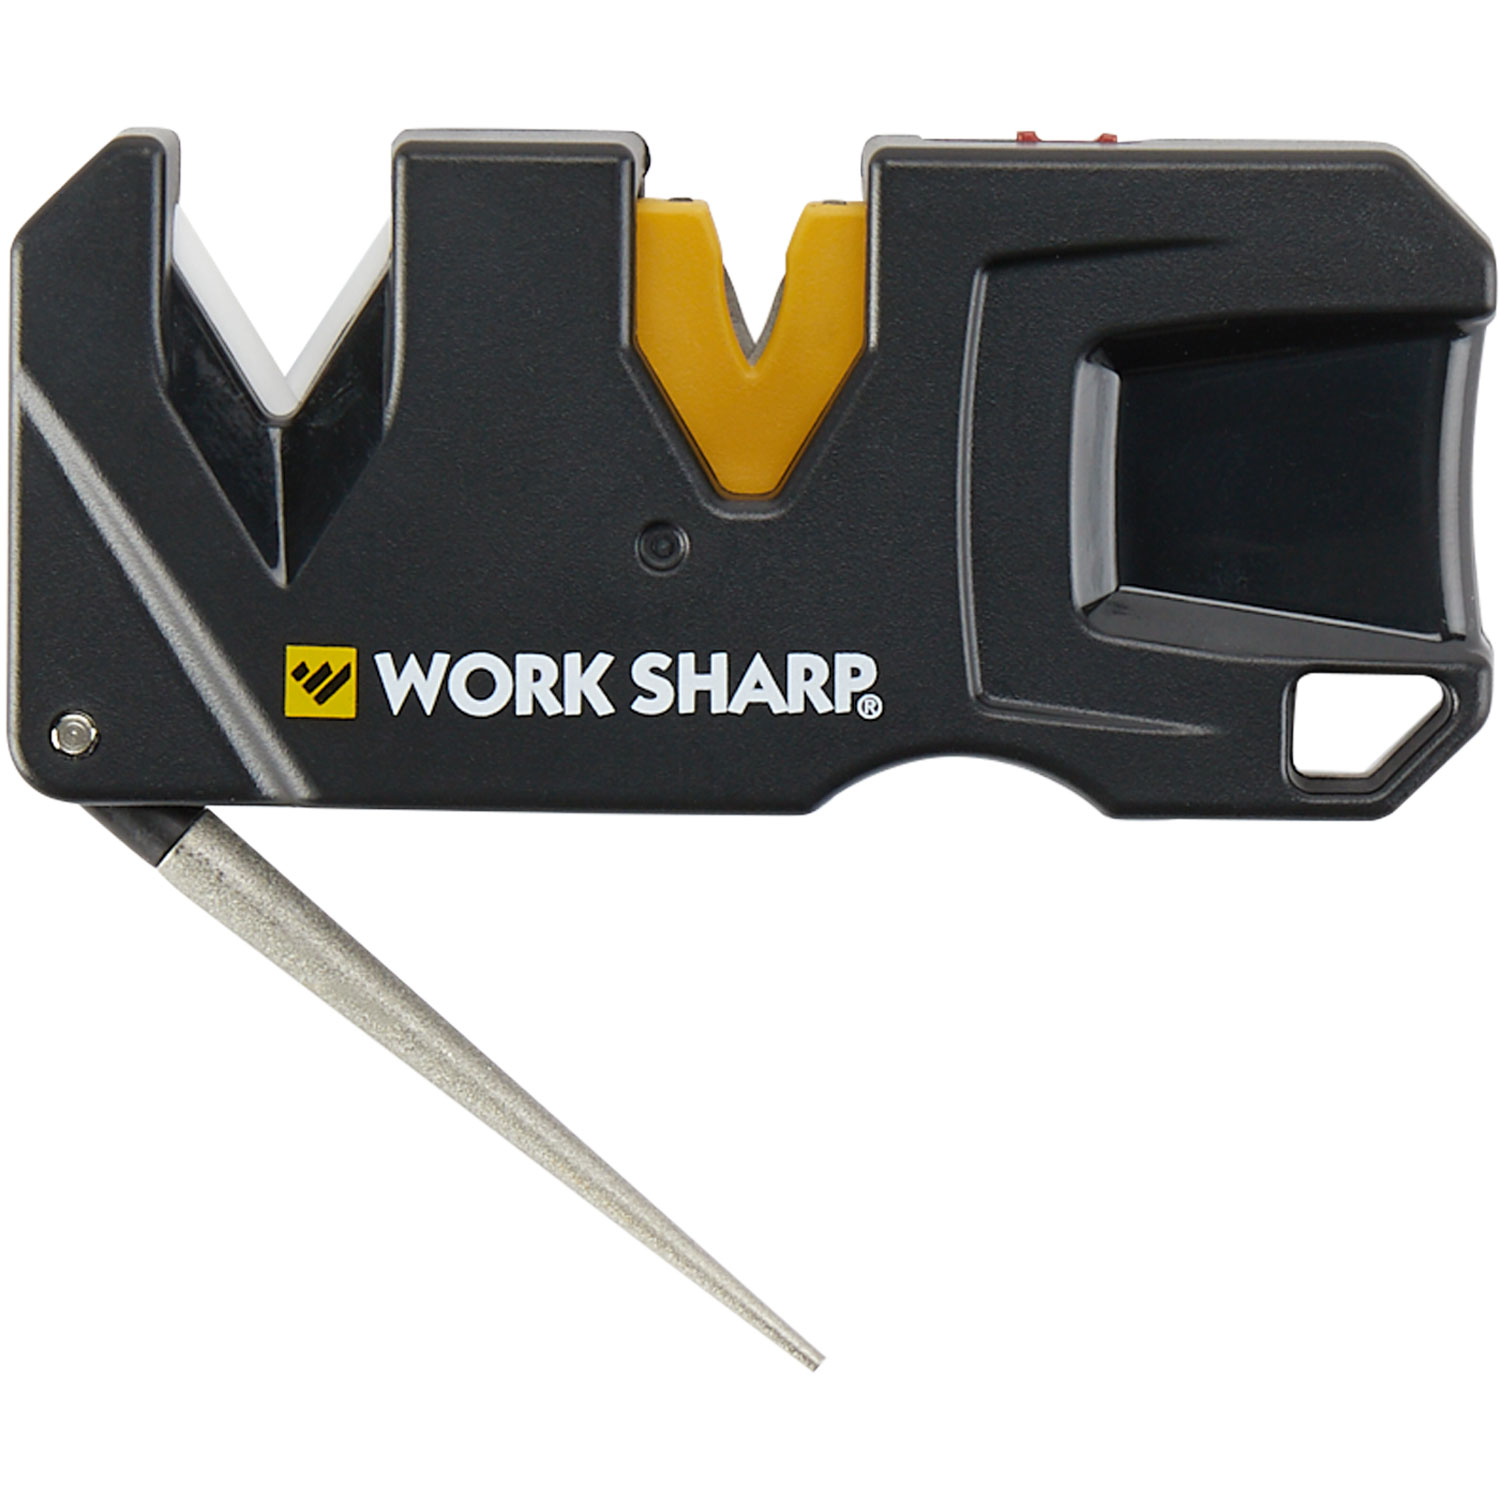 SharpWorx - Master Knife Sharpener : : Home